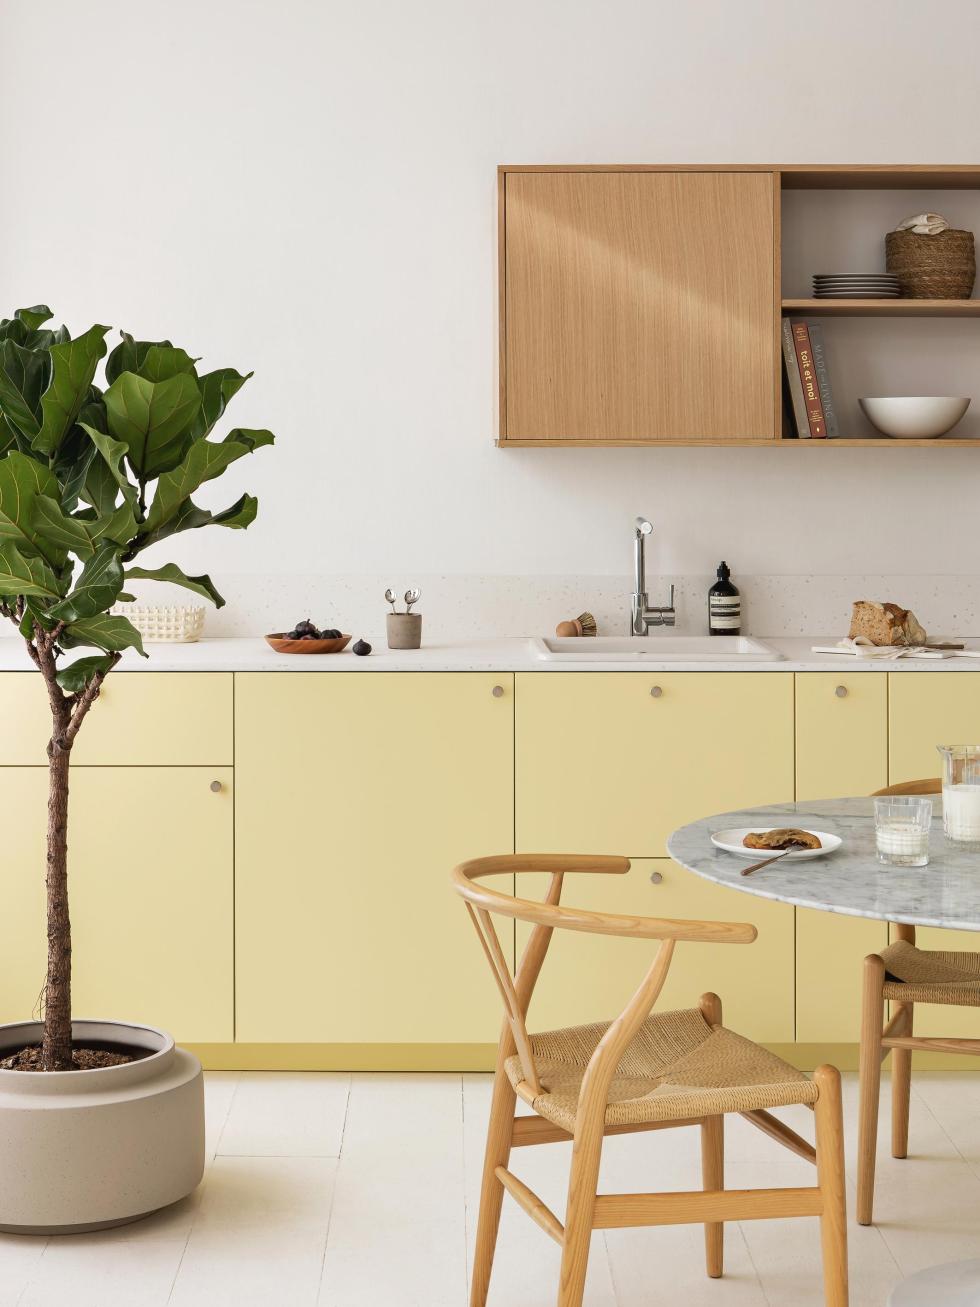 Lemonade kitchen designed by Plum Living studio - ⓒ Hervé Goluza for Plum Living